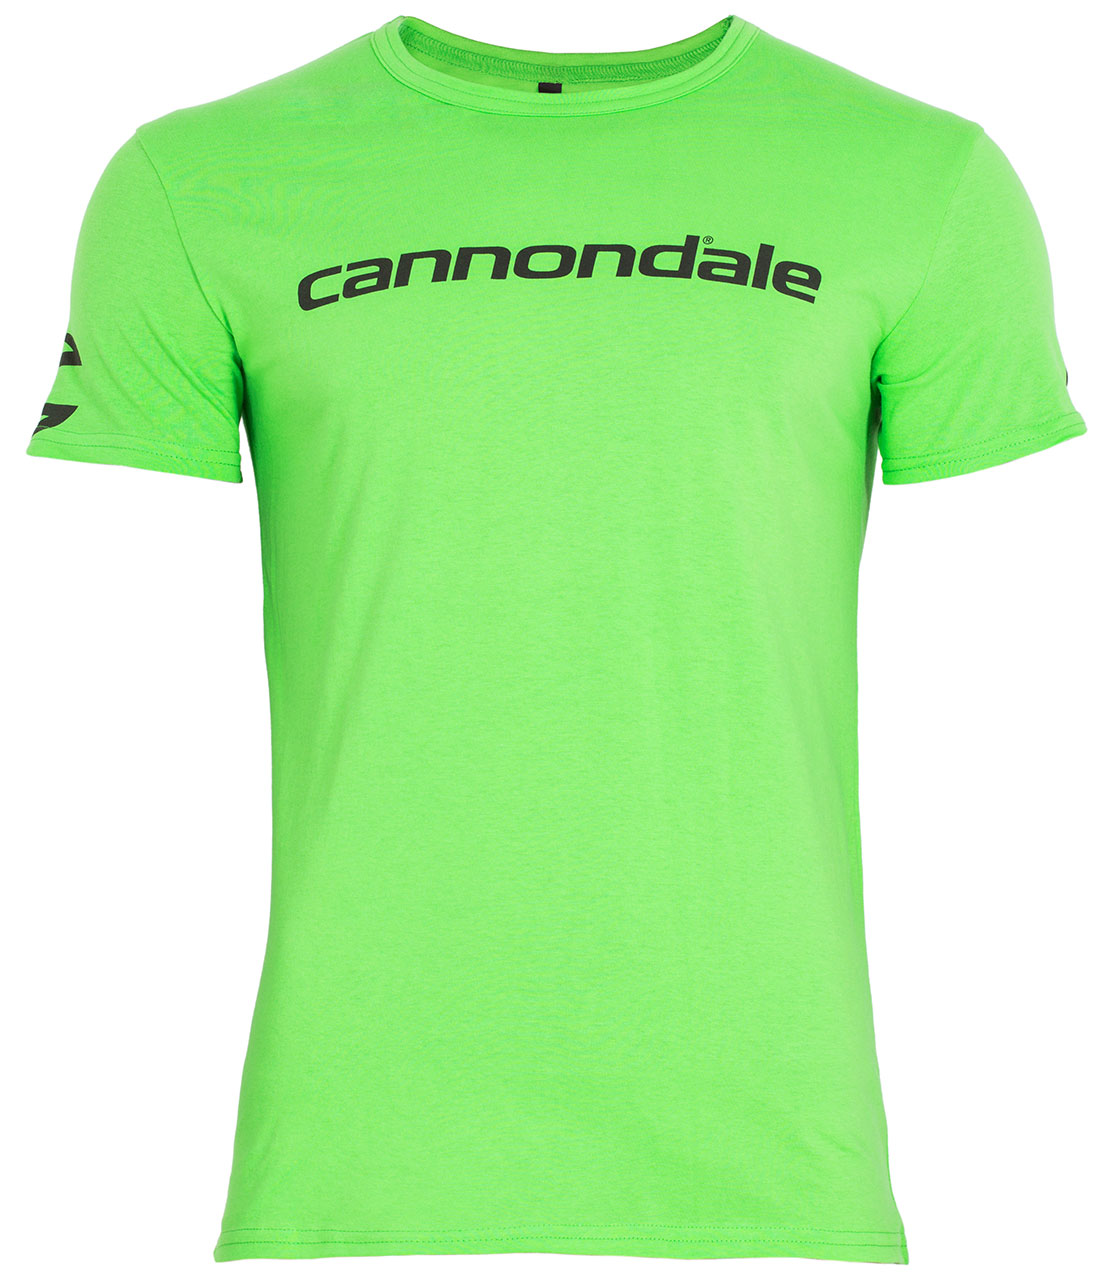 Футболка Cannondale с черным горизонтальным логотипом, зелёная, размер S фото 